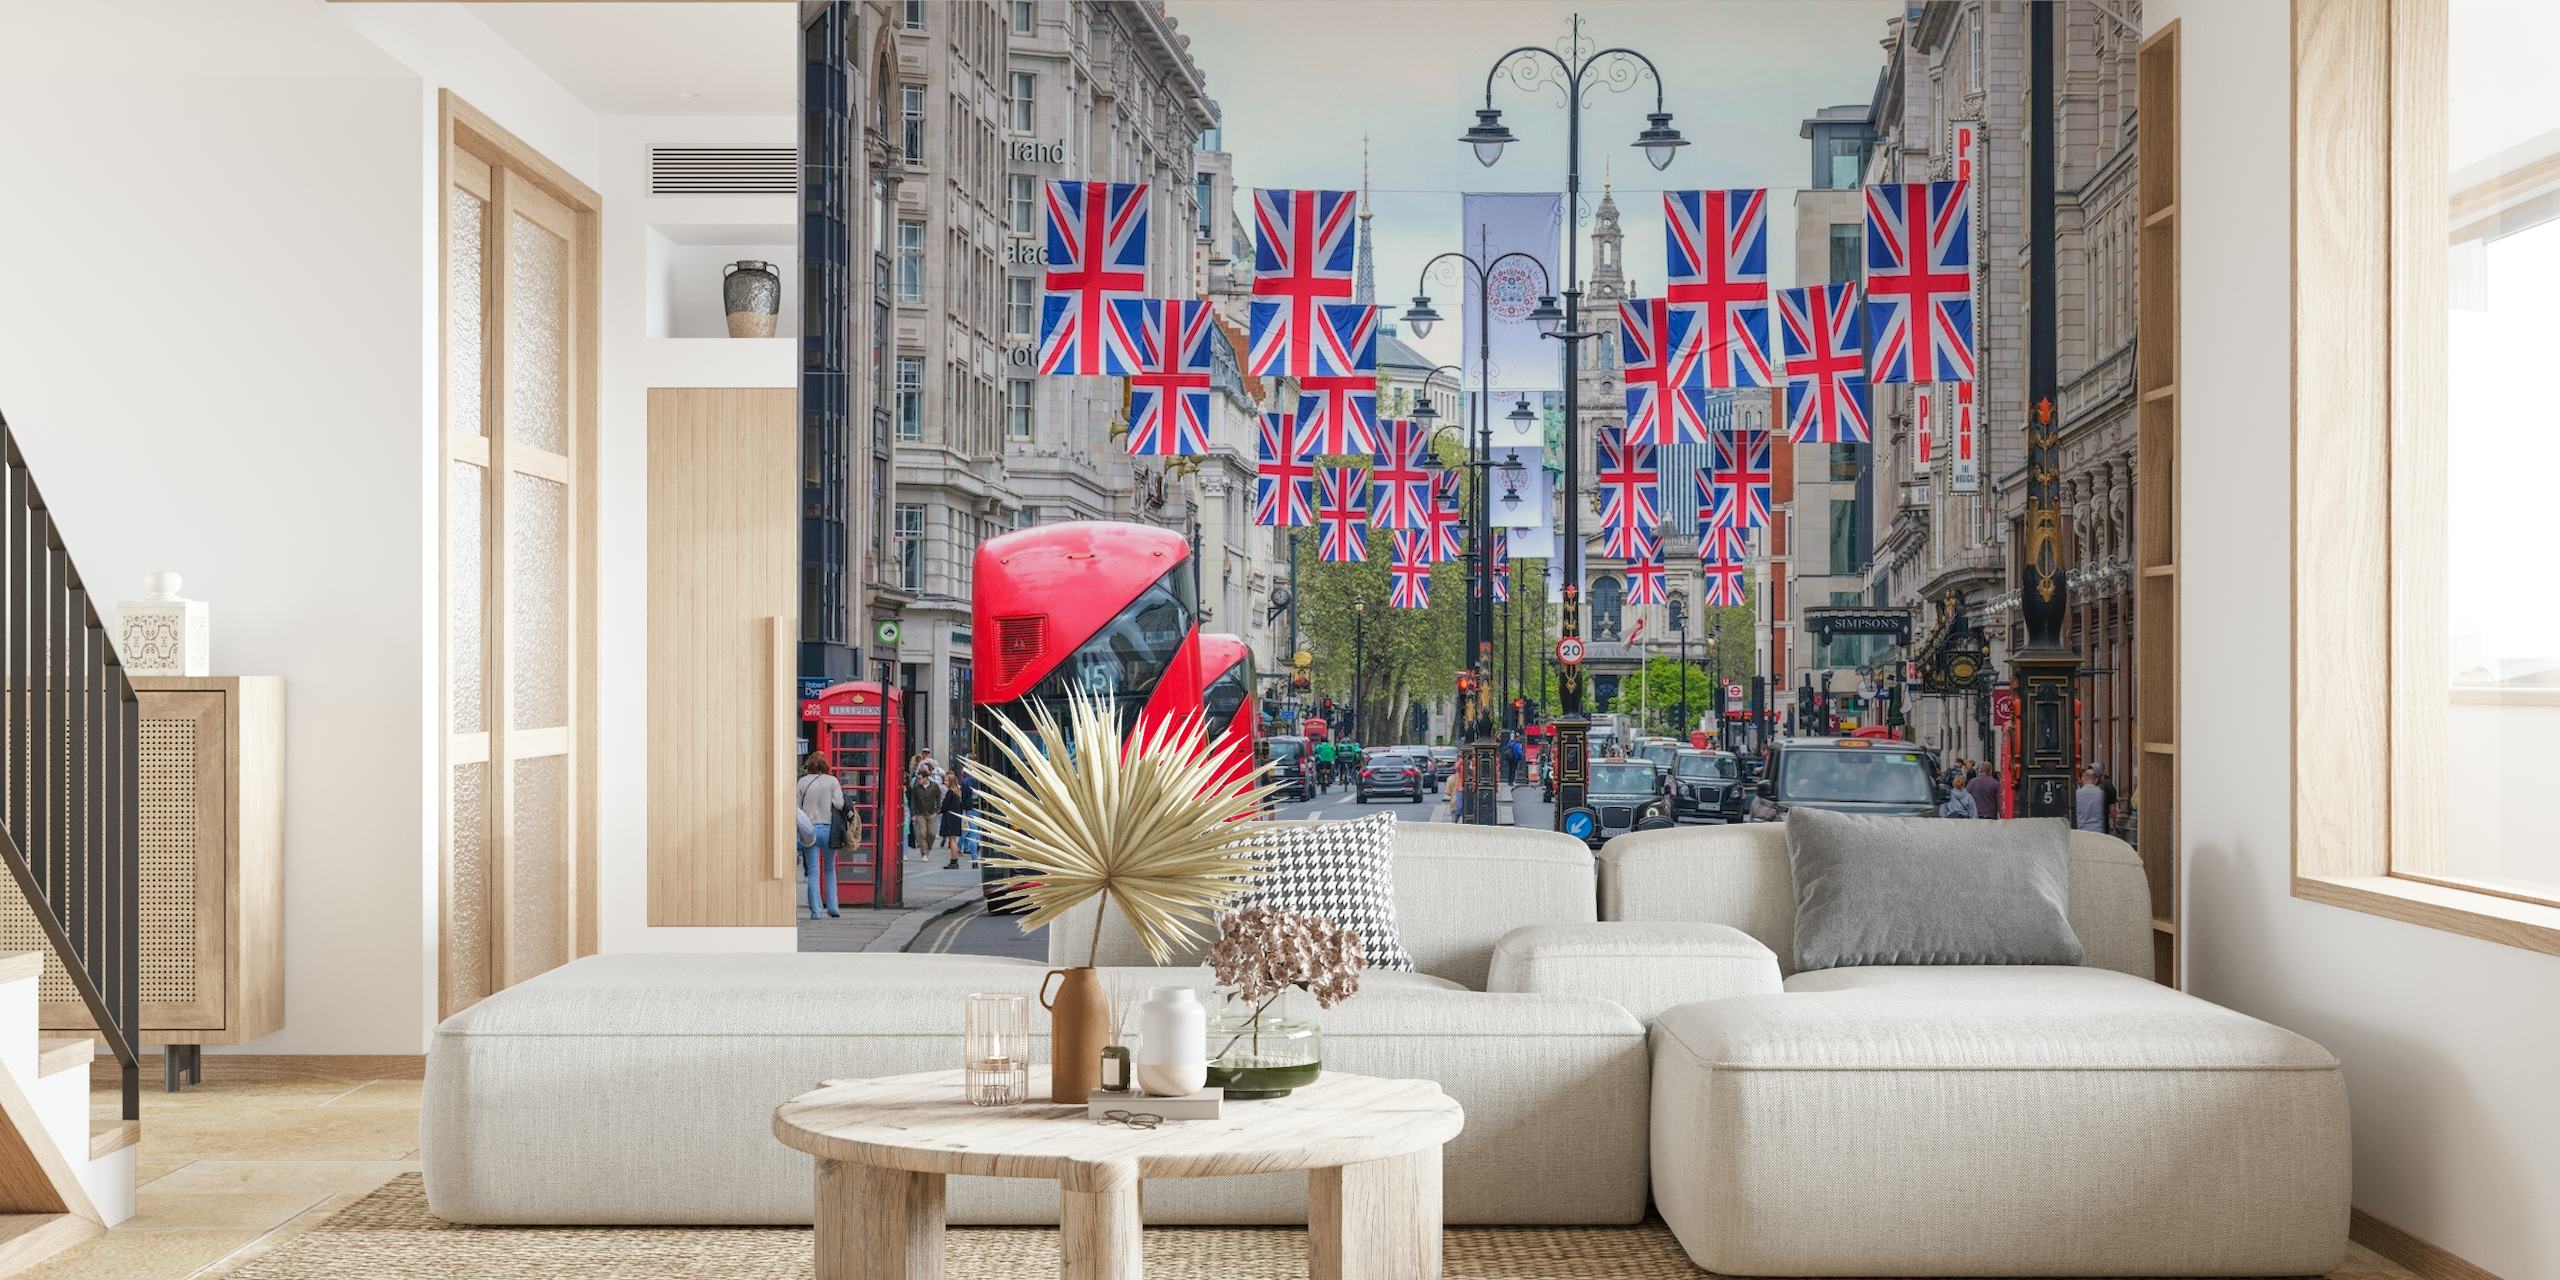 Scena uliczna Londynu z flagami Union Jack i fototapetą z czerwonym piętrowym autobusem